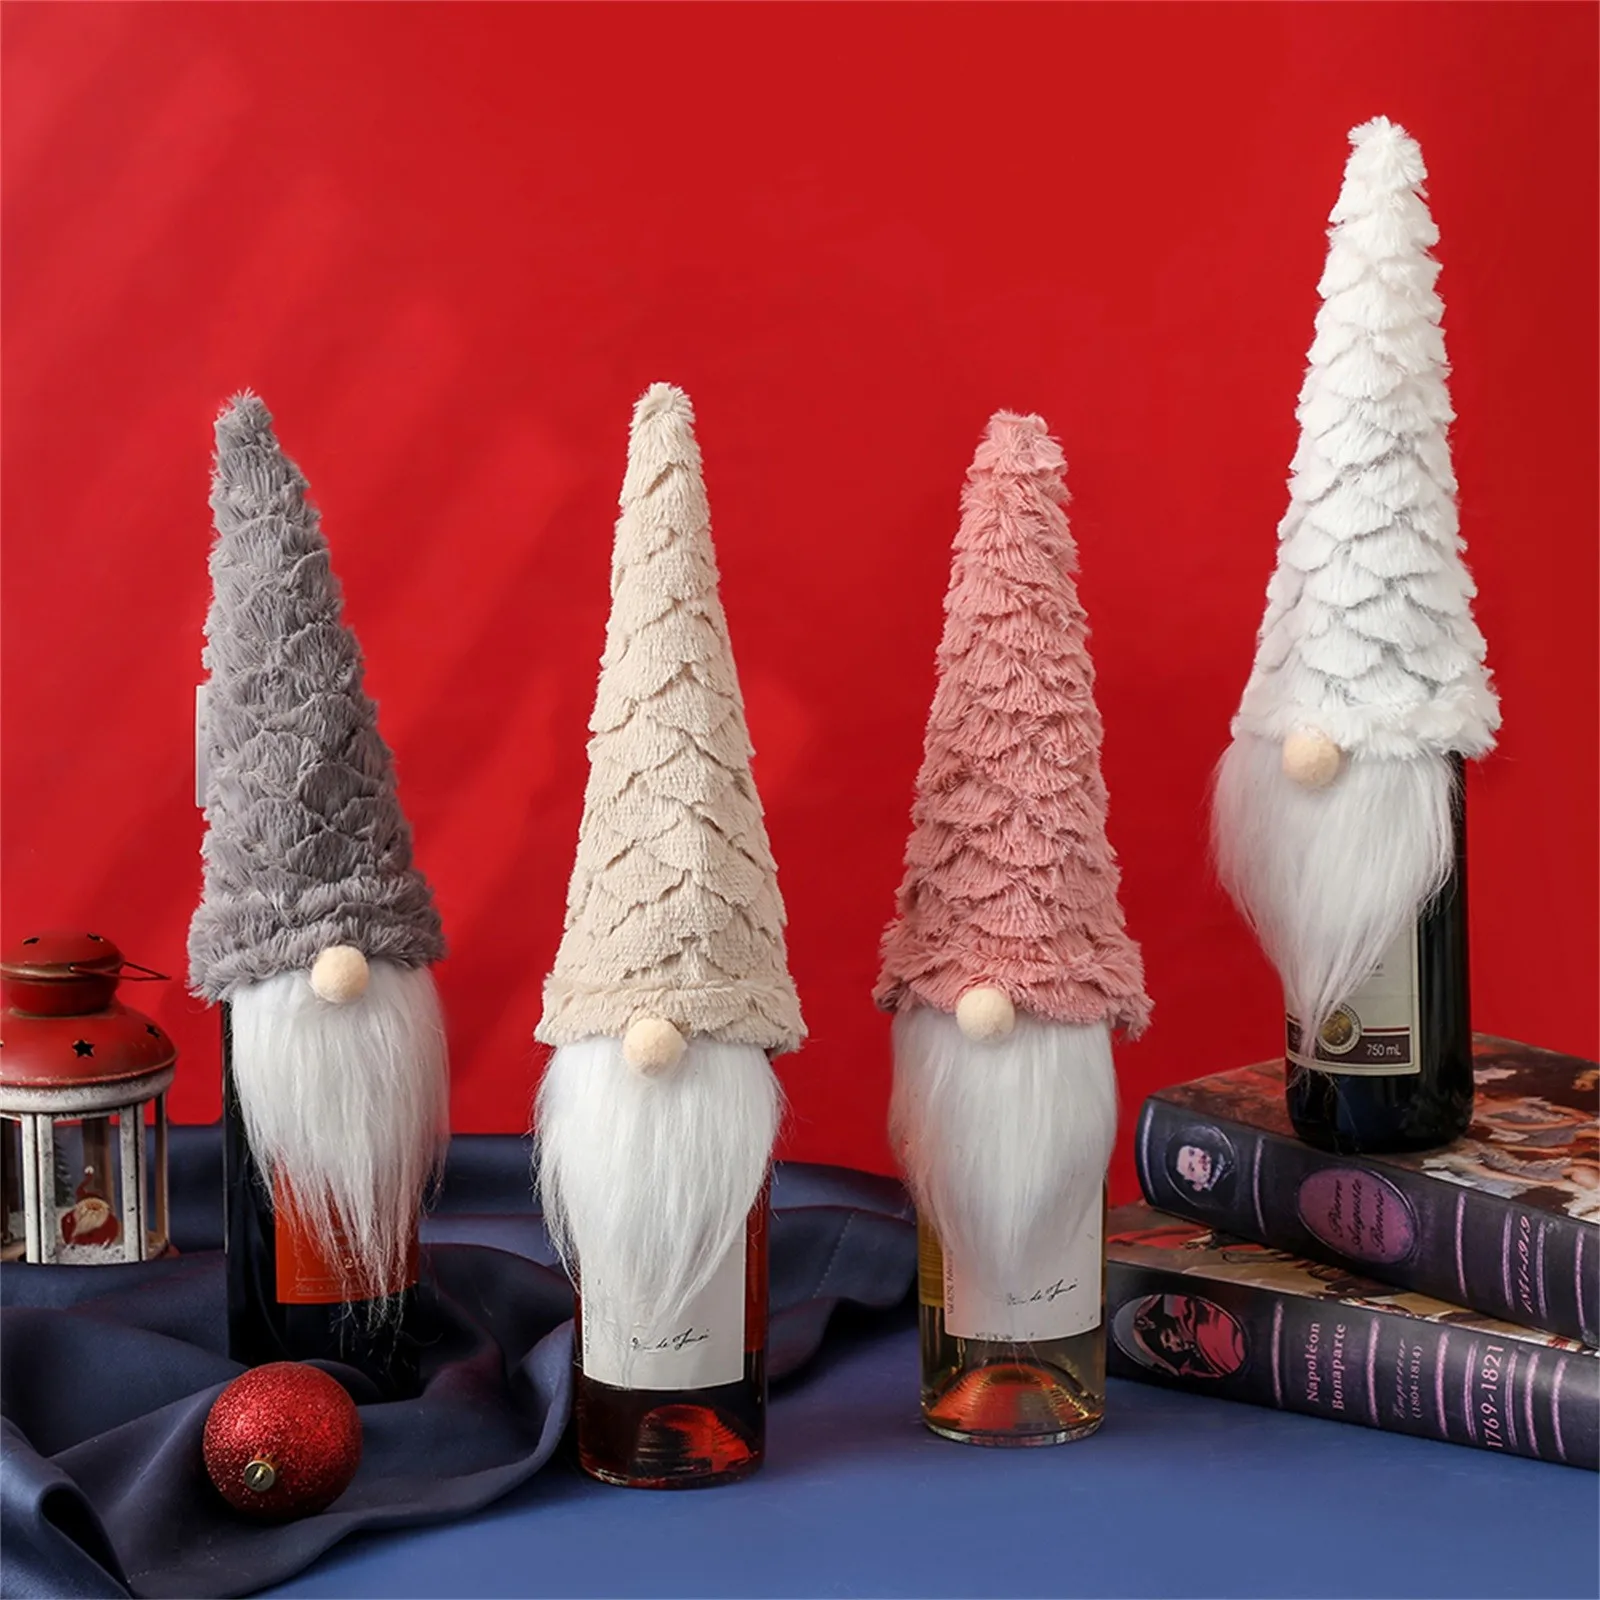 Kép /Karácsonyi-boros-üveg-fedelét-aranyos-gnome-arctalan-1-3271-thumb.jpg